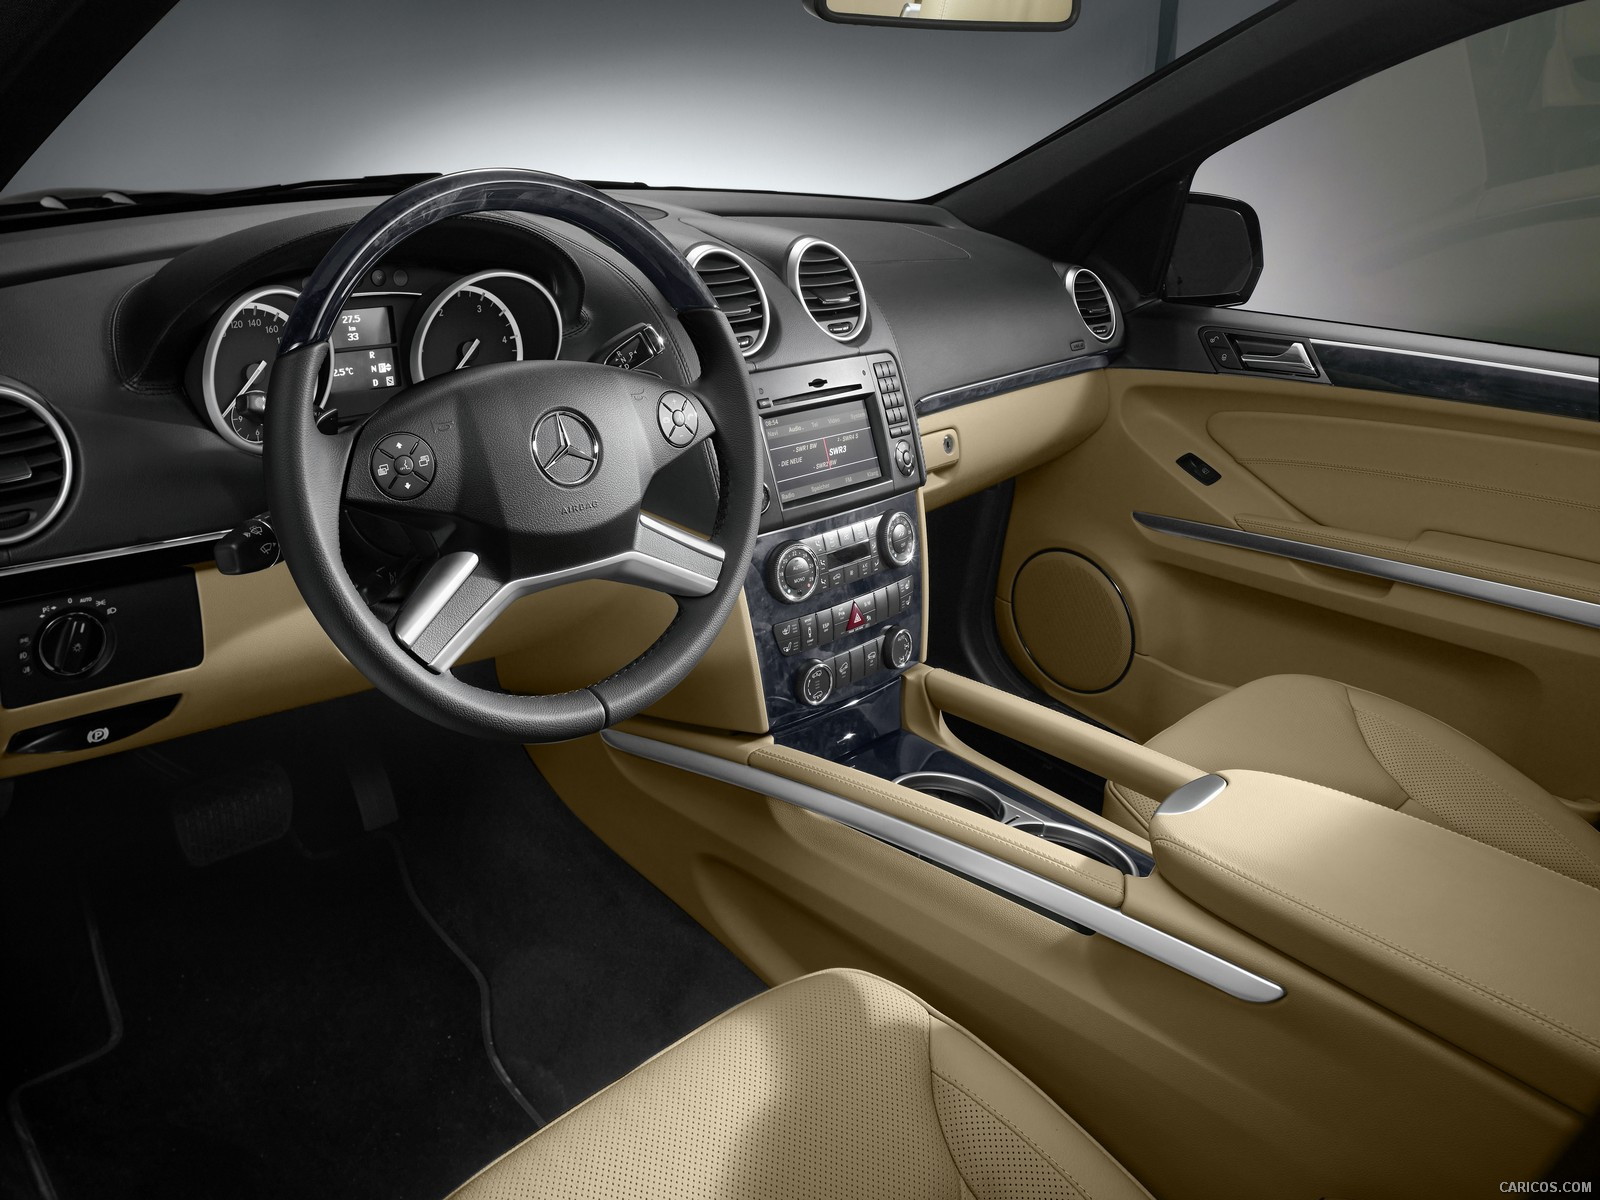 2010 Mercedes-Benz GL350 BlueTEC - Interior, #111 of 112